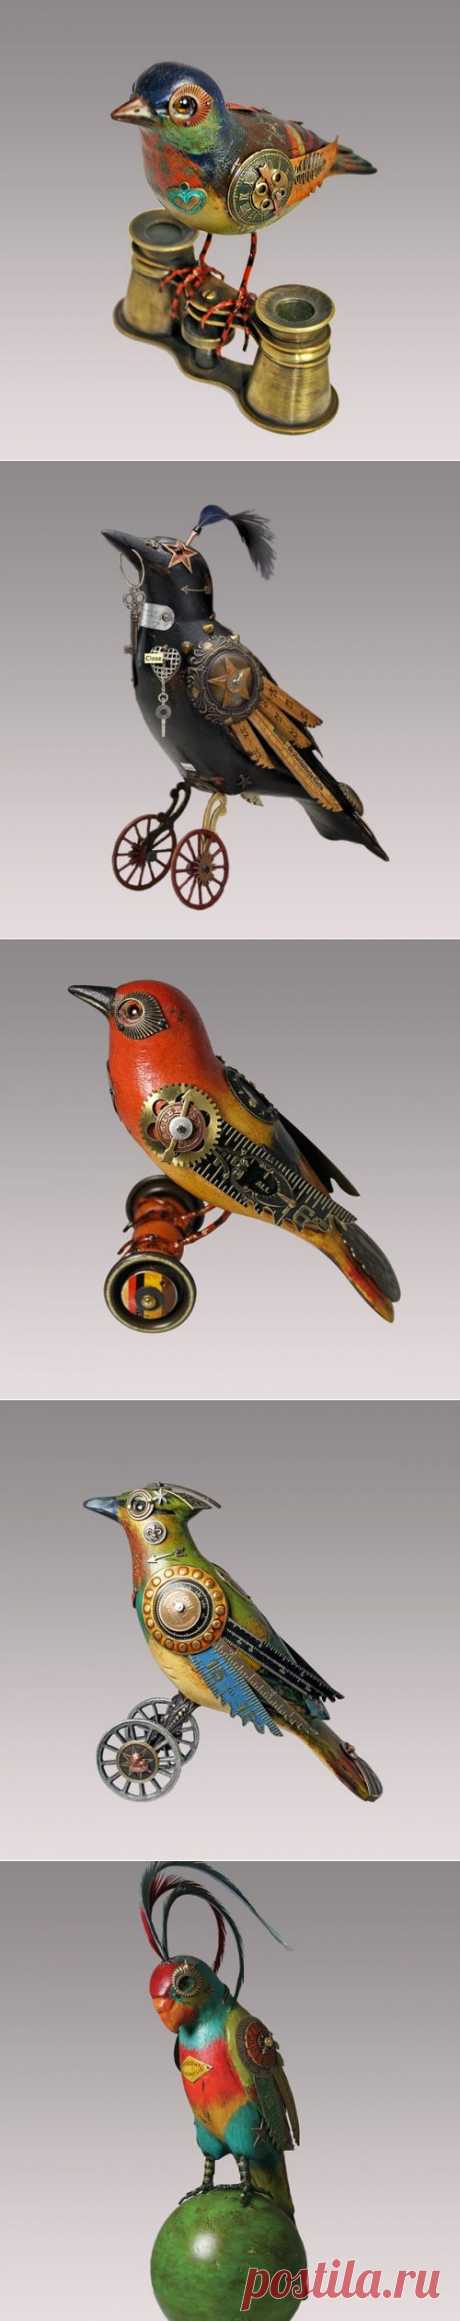 Птицы в стиле стимпанк от студии Mullanium